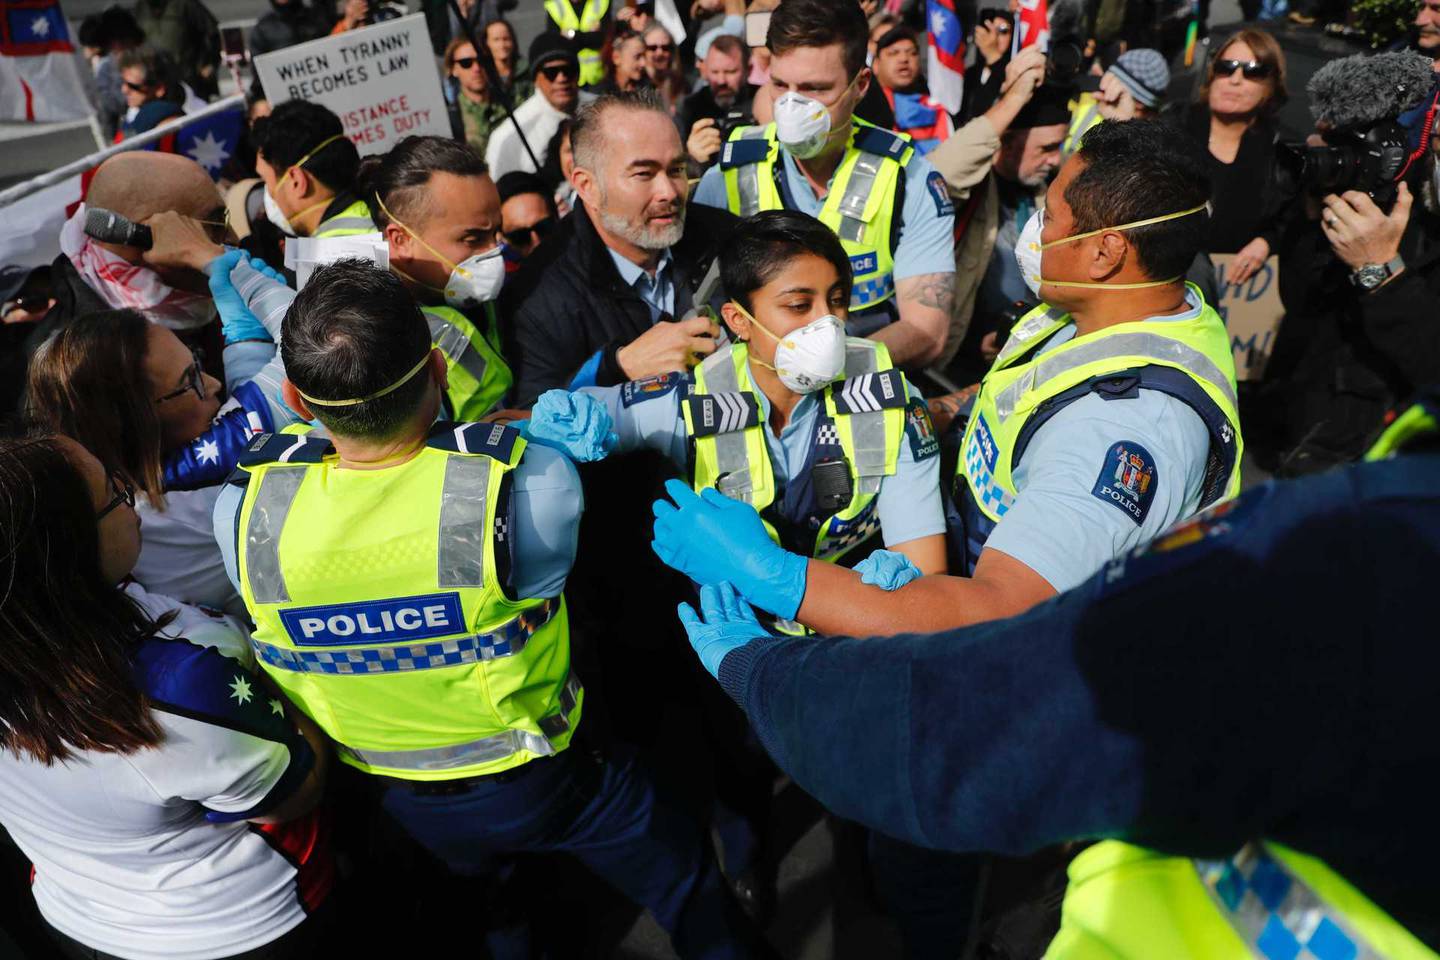 失败的政治家比利·特·卡希卡 (Billy Te Kahika) 在奥克兰的一次抗议活动中被捕。 照片/布雷特·菲布斯